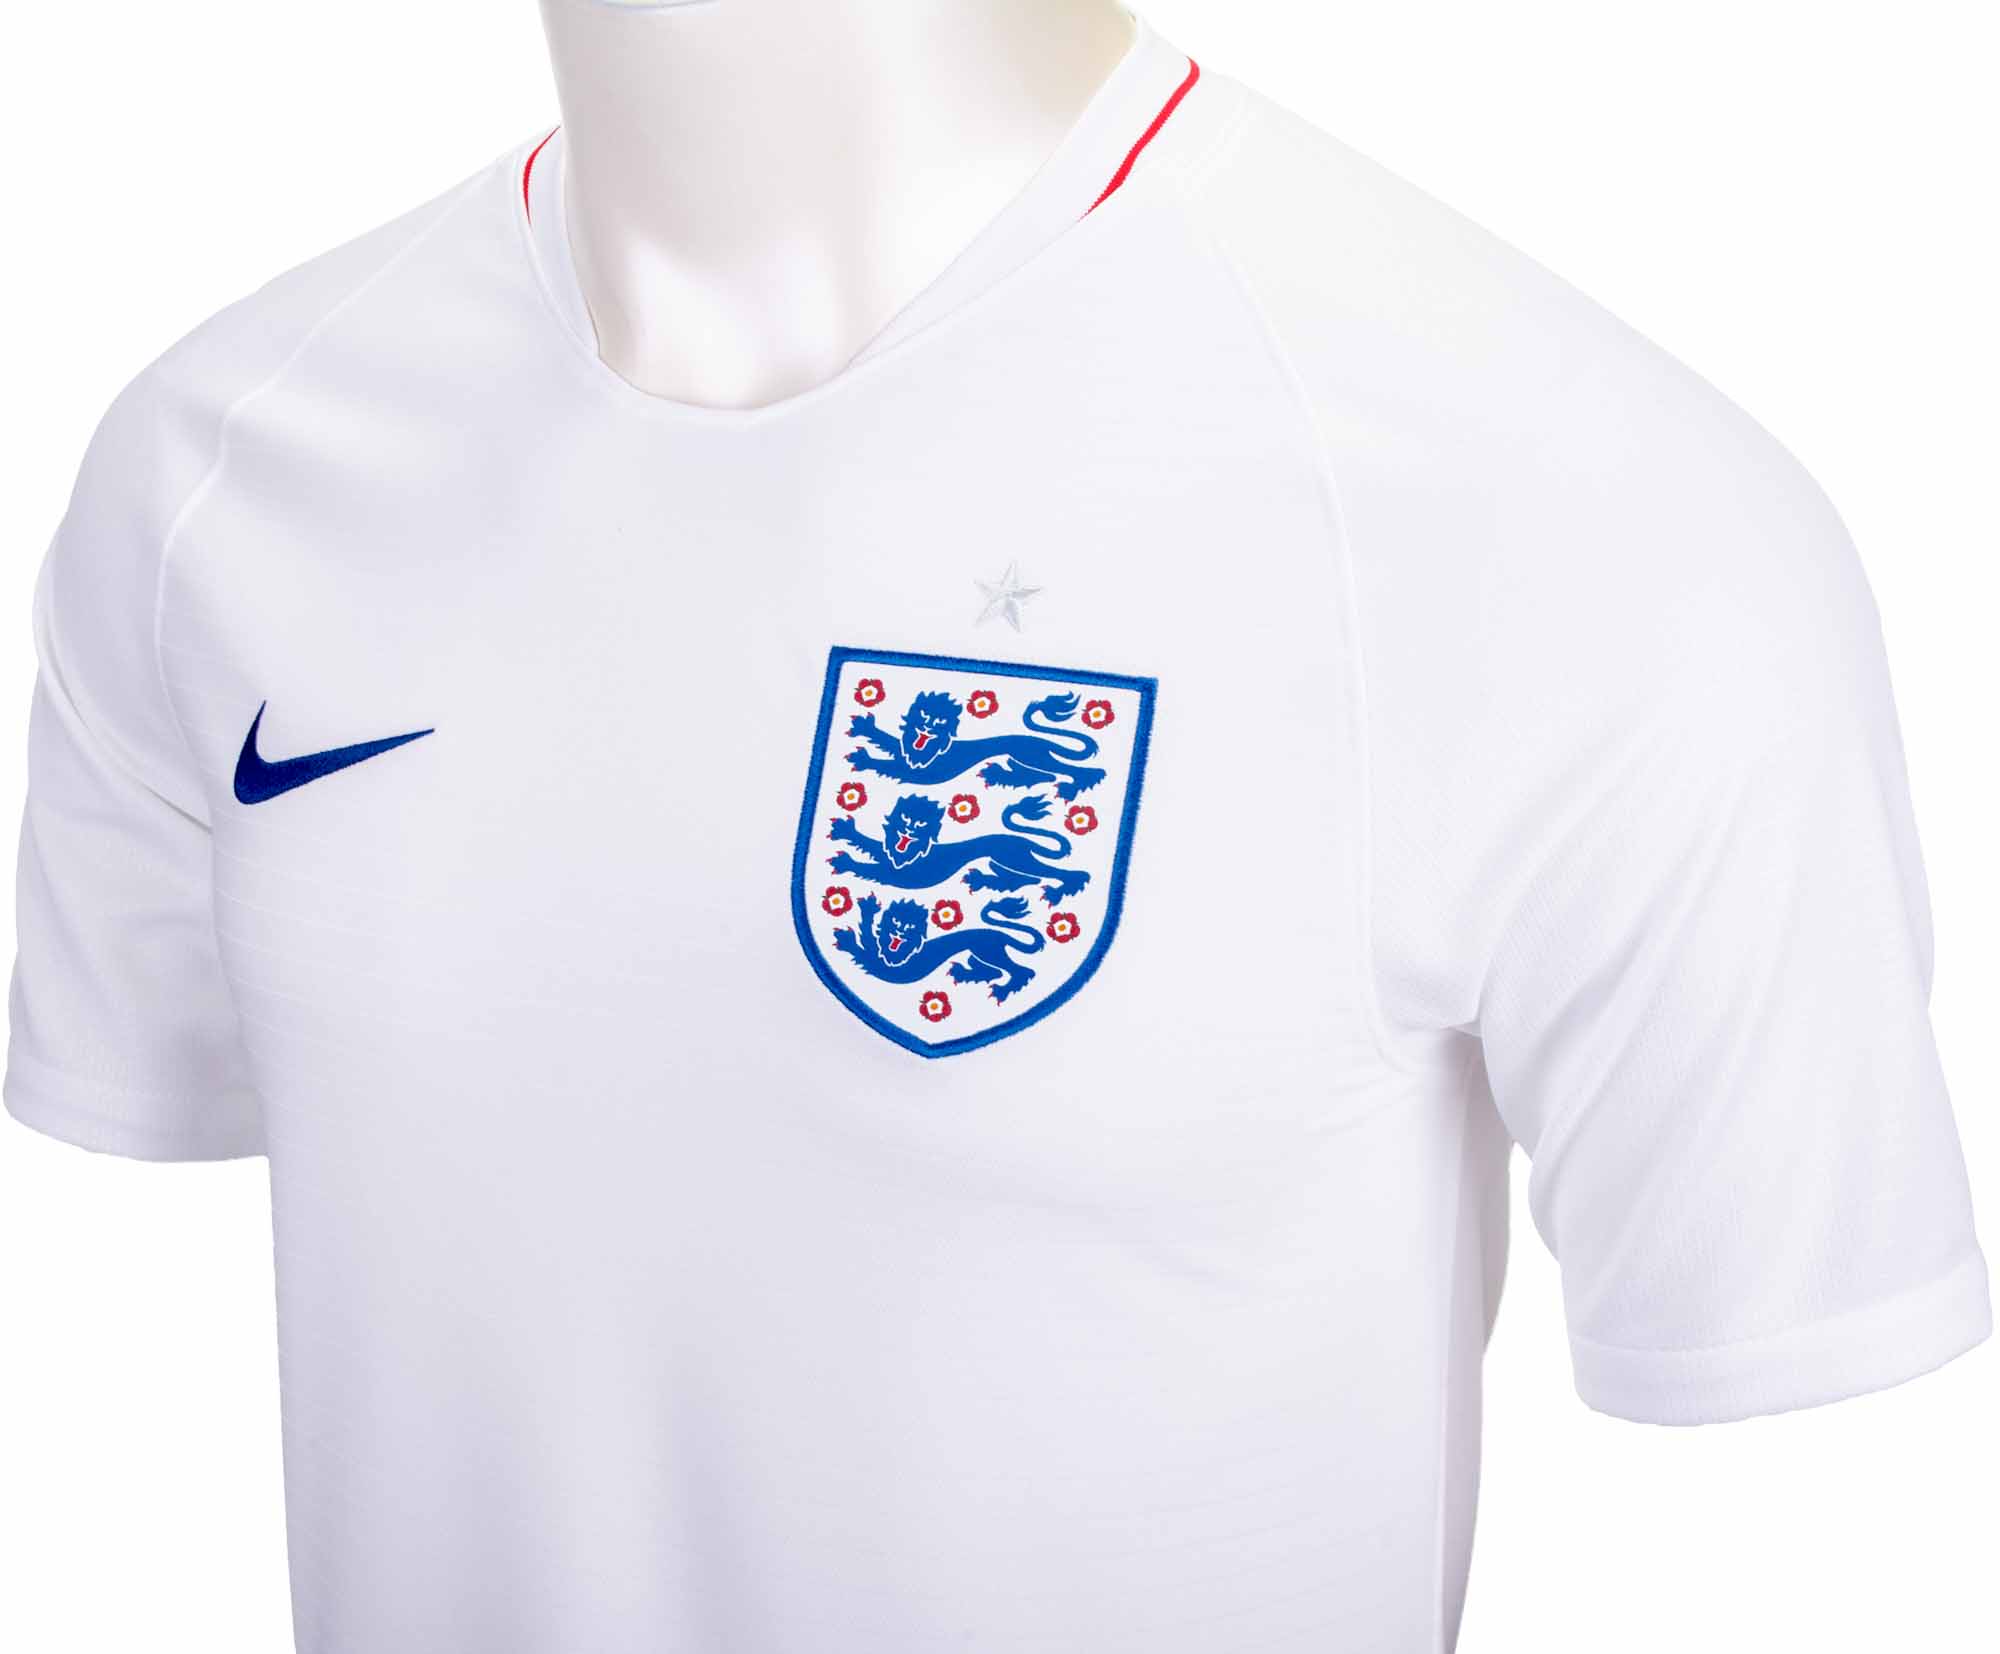 england home kit 2018